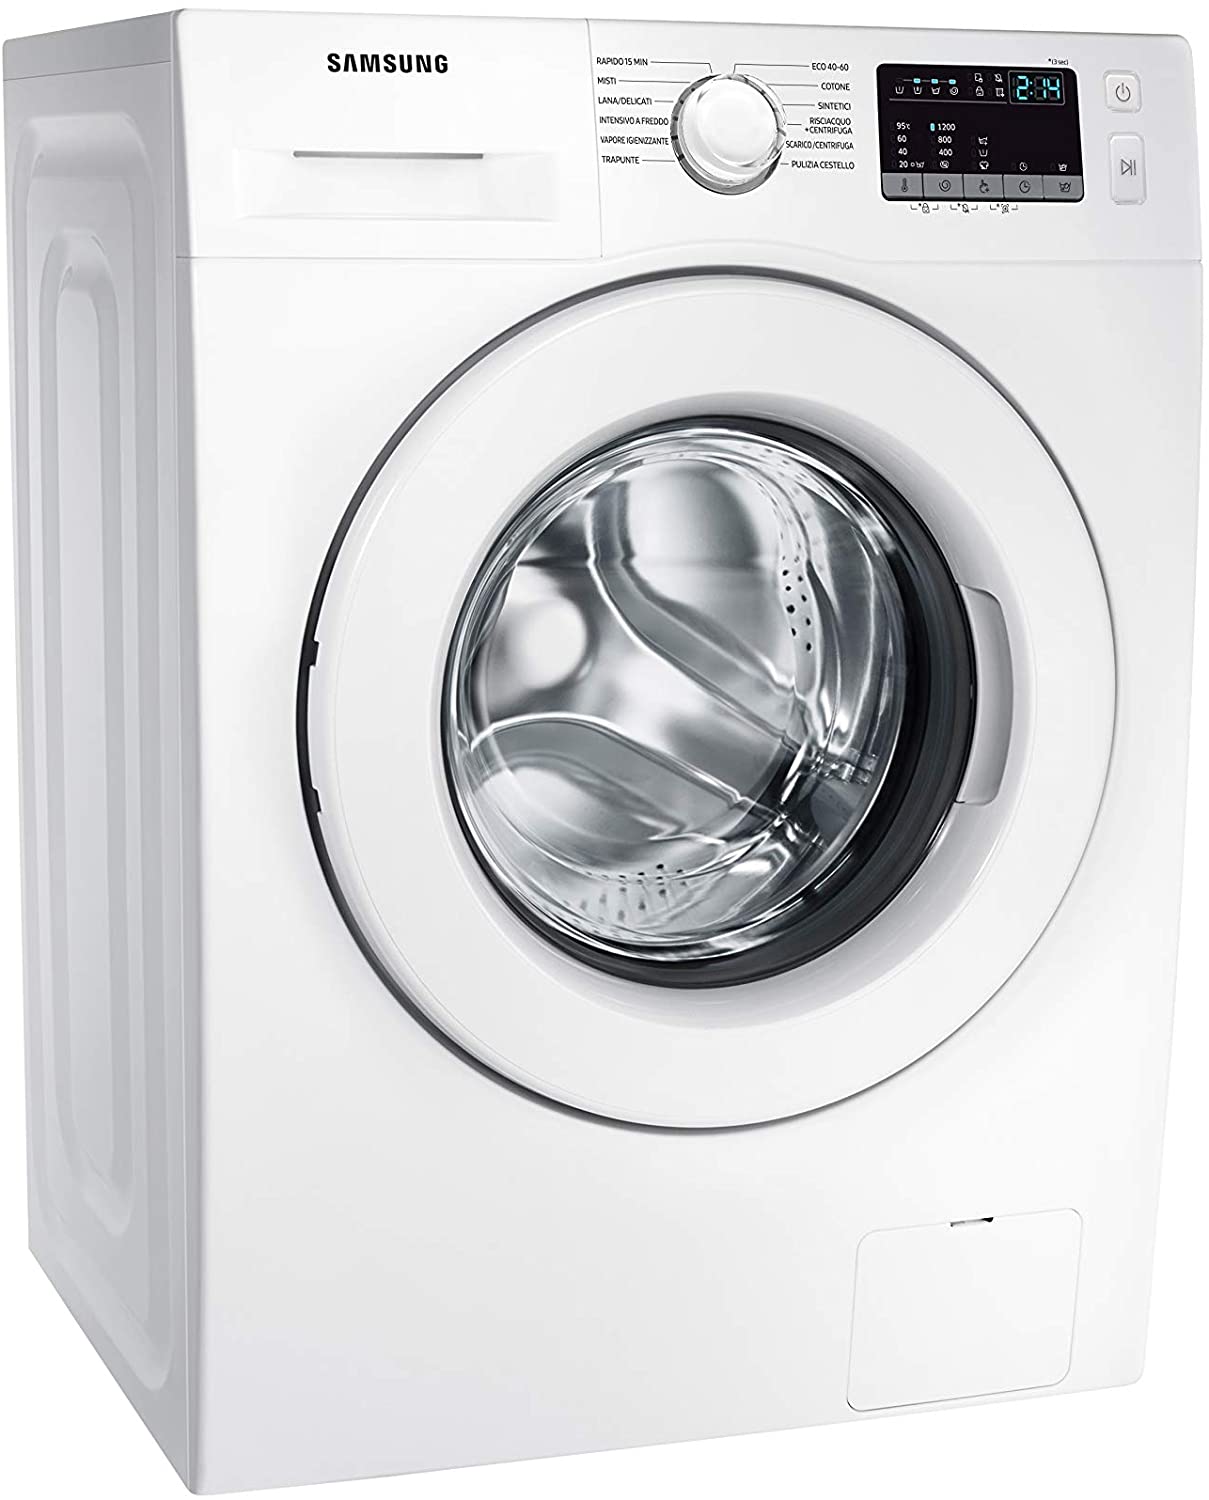 Купить хорошую стиральную машину автомат недорого